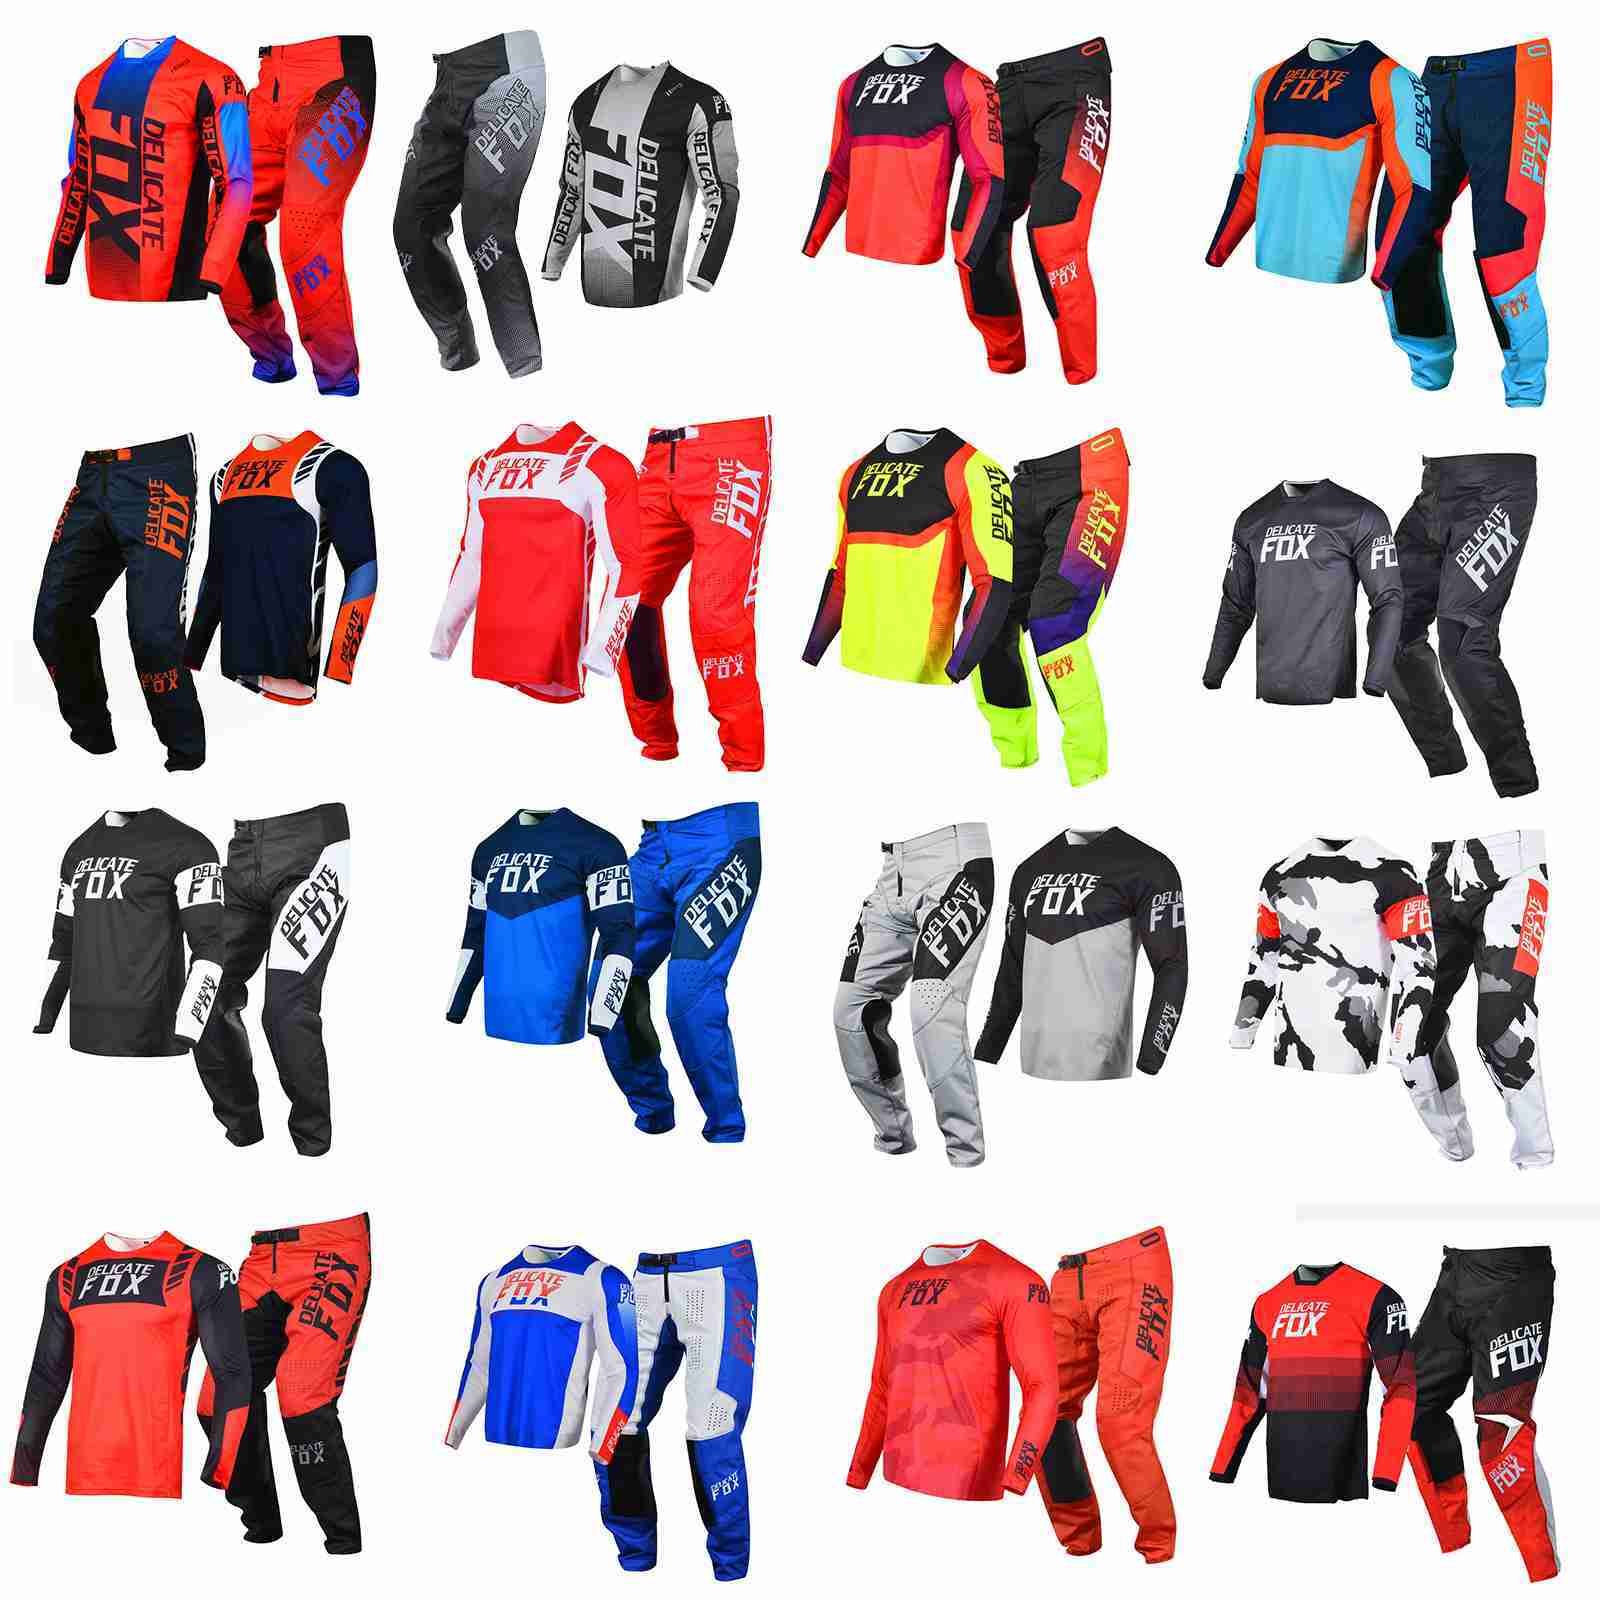 Socicinadores Hombres Motocross Racing Gear Juego De Delicados Pantalones De Jersey Fox MX Combo Dirt Bike Outfit Montaña Todoterreno Moto Cross Kits For Men Kits De 28,22 € | DHgate